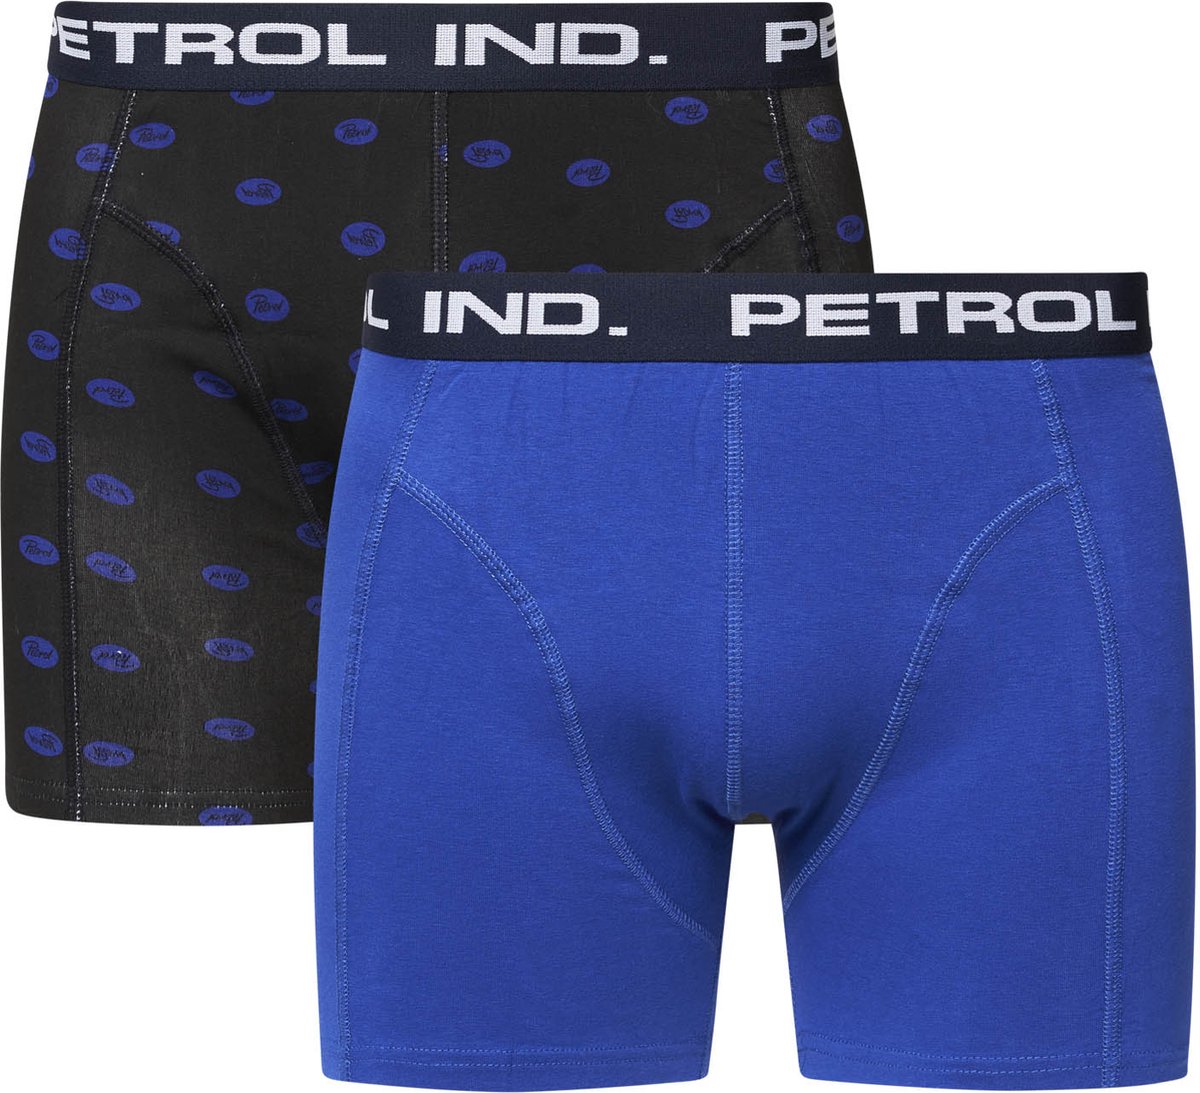 Petrol Onderbroek - Petrol Industries - 2-pack Boxershorts - Blauw - Blauw met logo